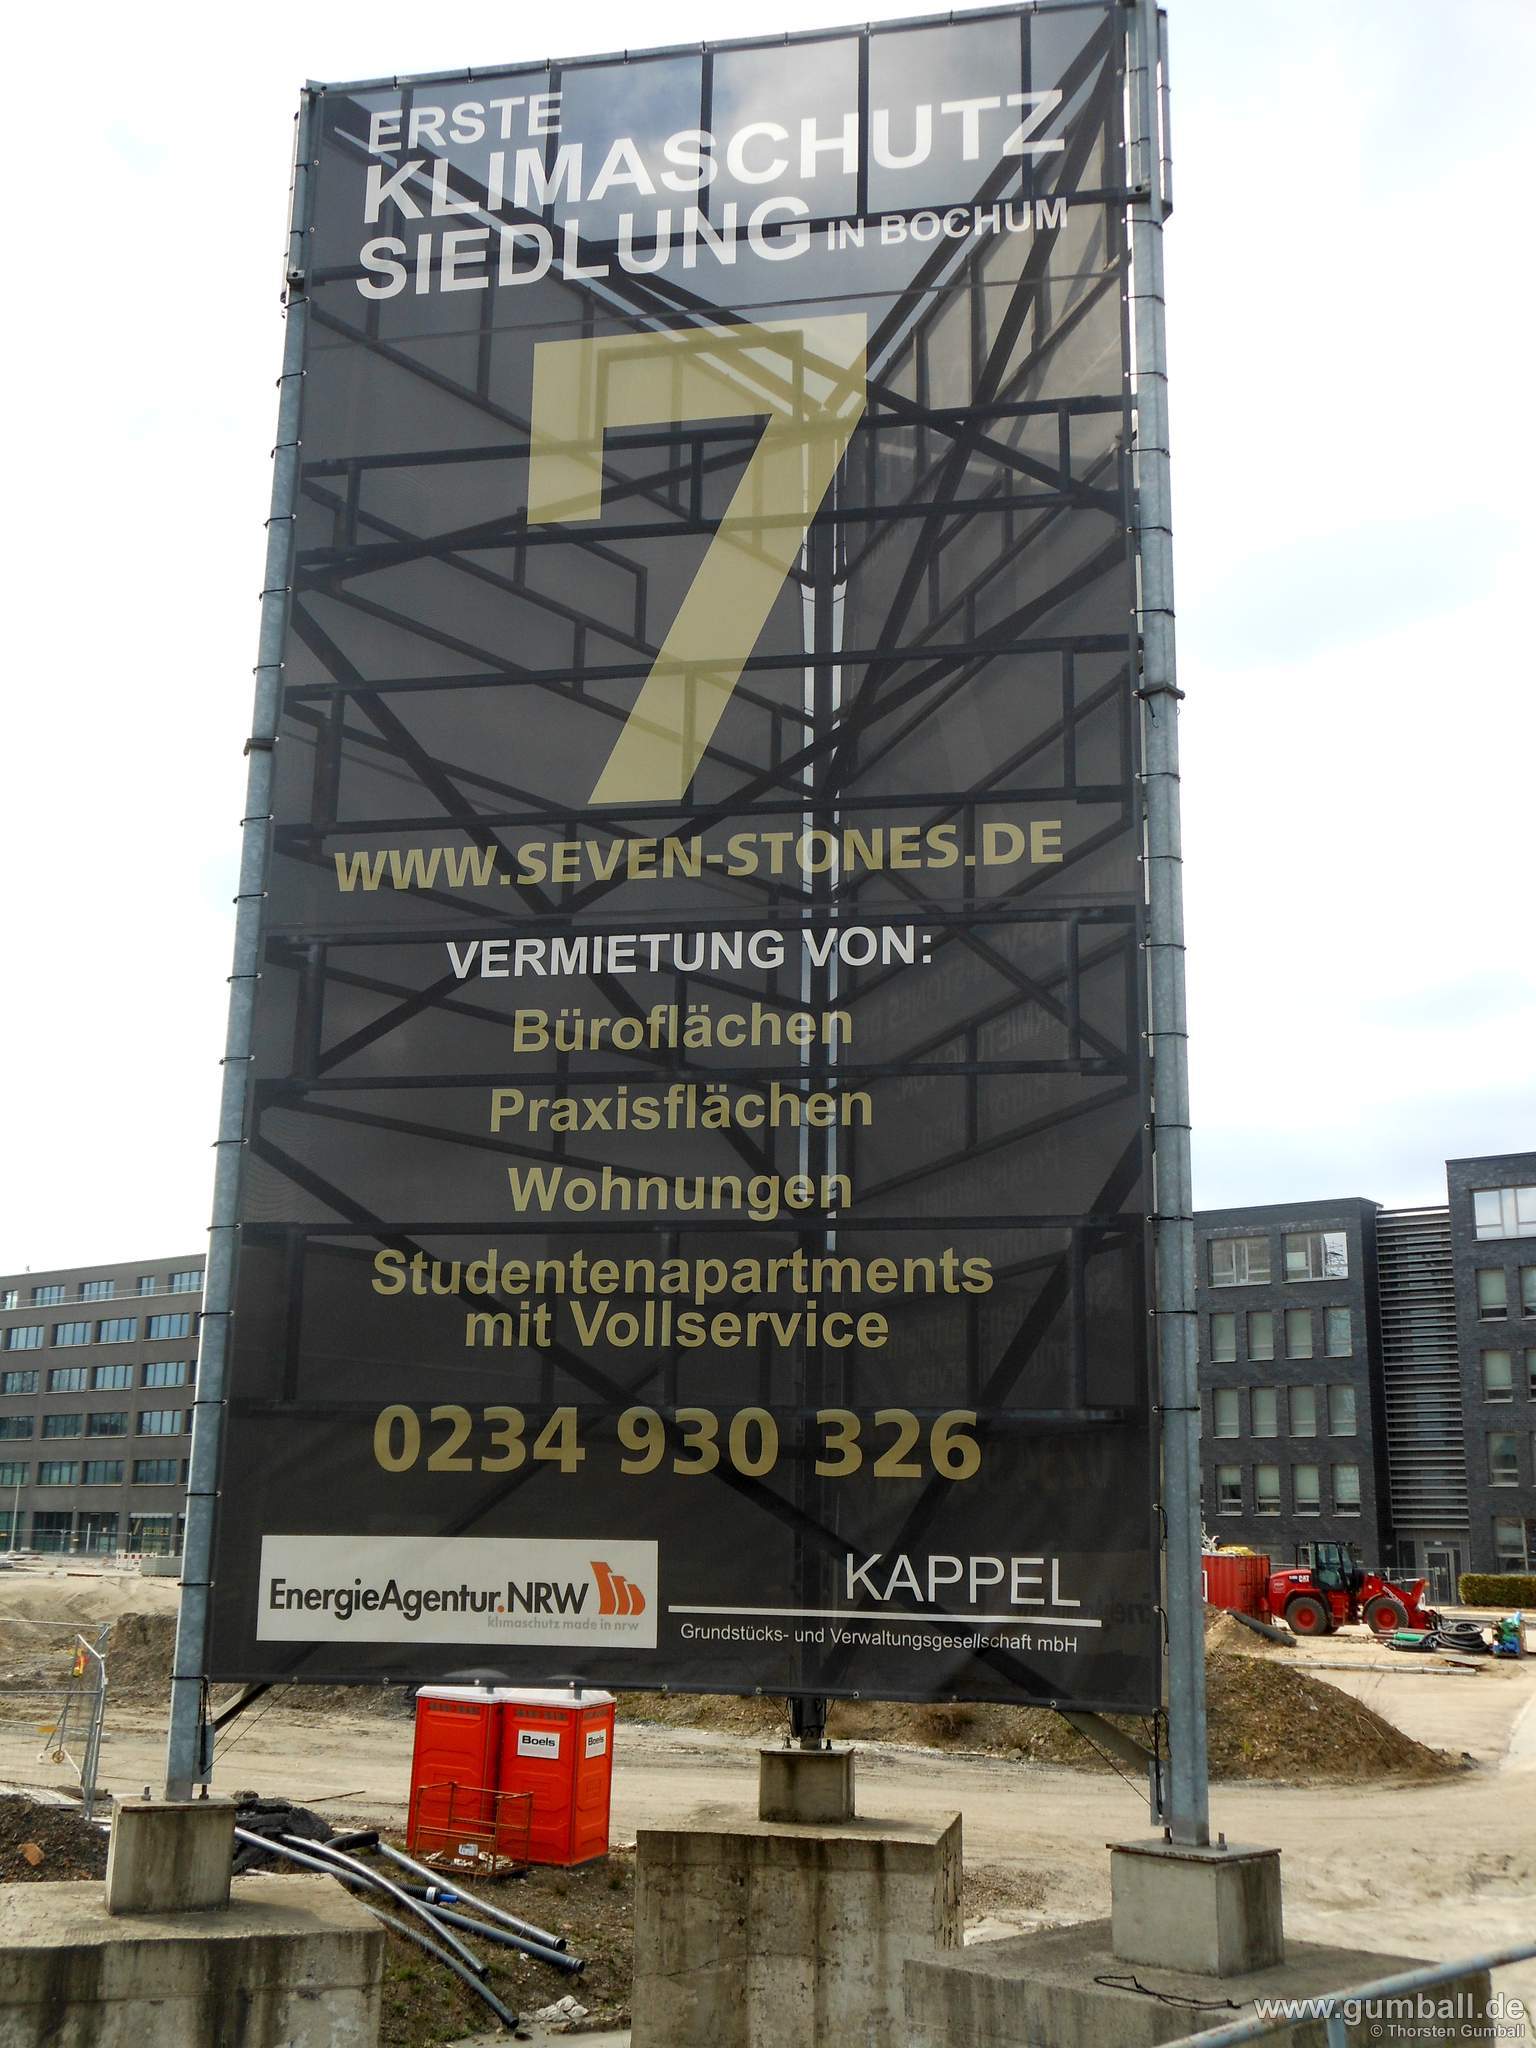 Seven Stones Baustelle, Bochum - April 2021 (12)